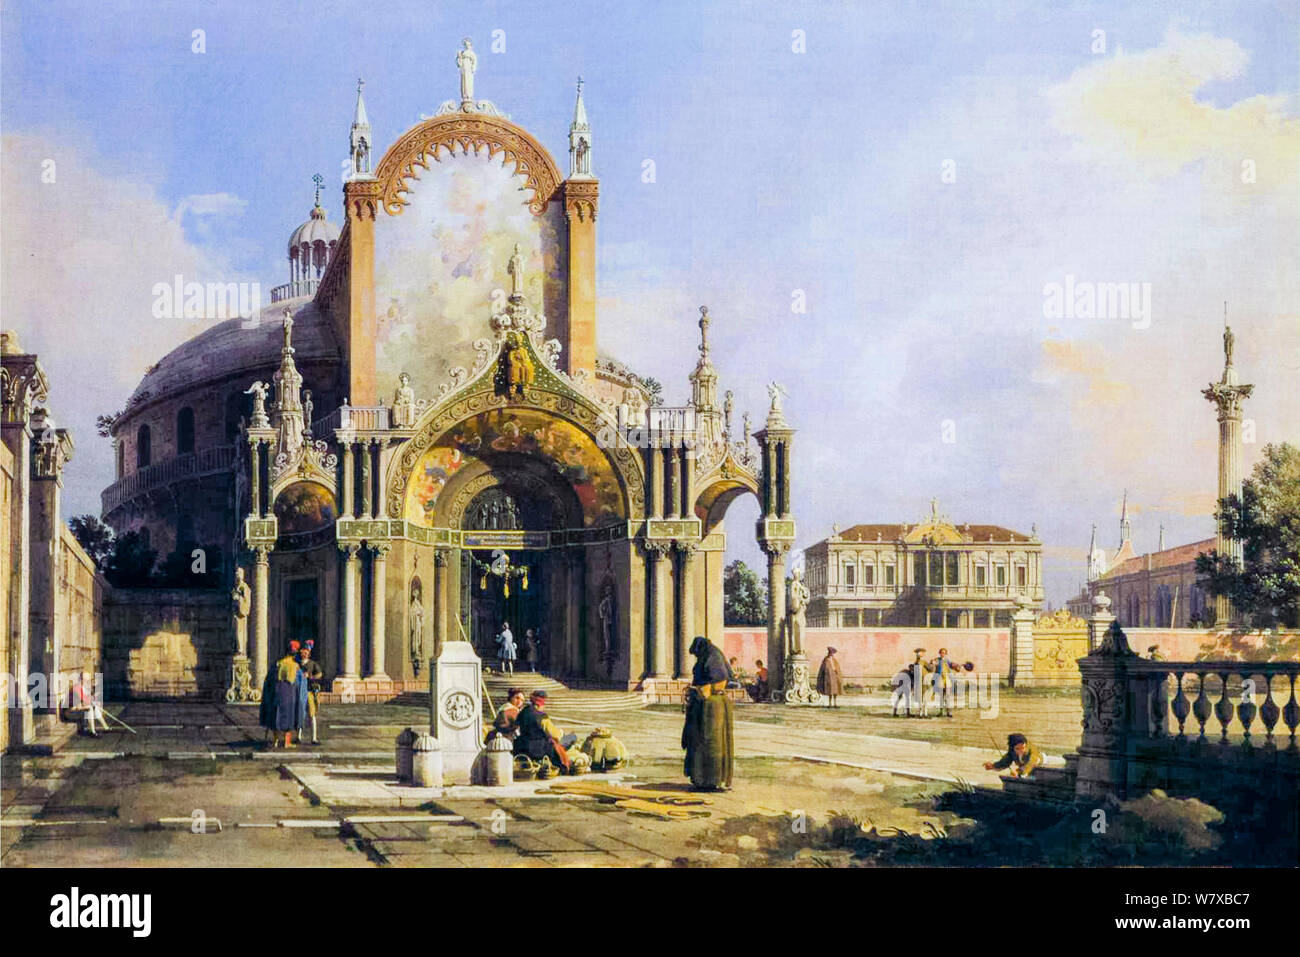 Canaletto, Capriccio der runden Kirche mit einem aufwändigen Gotischen Vorhalle in einer Piazza, eine Palladianische Palazzo und eine gotische Kirche jenseits, Malerei, 1753-1755 Stockfoto